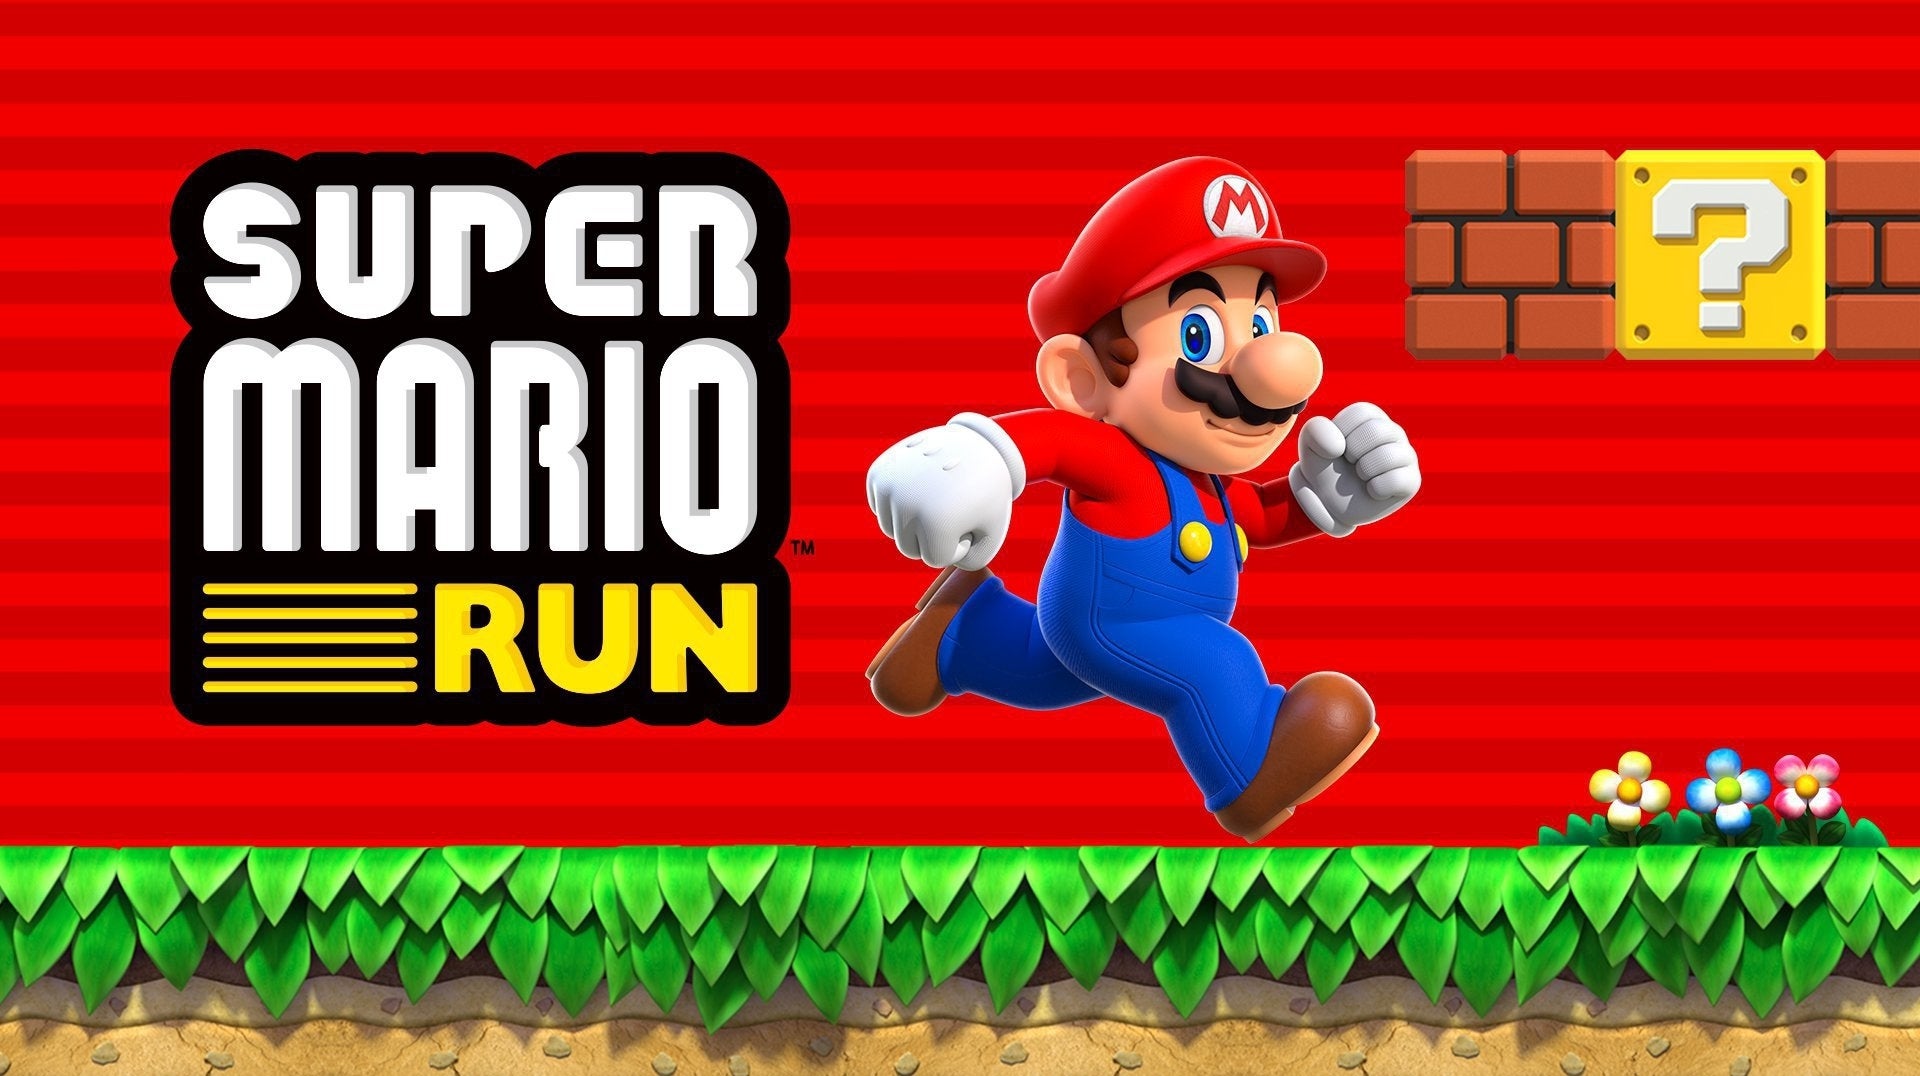 Imagen para Super Mario Run llega a 60 millones de dólares en ingresos